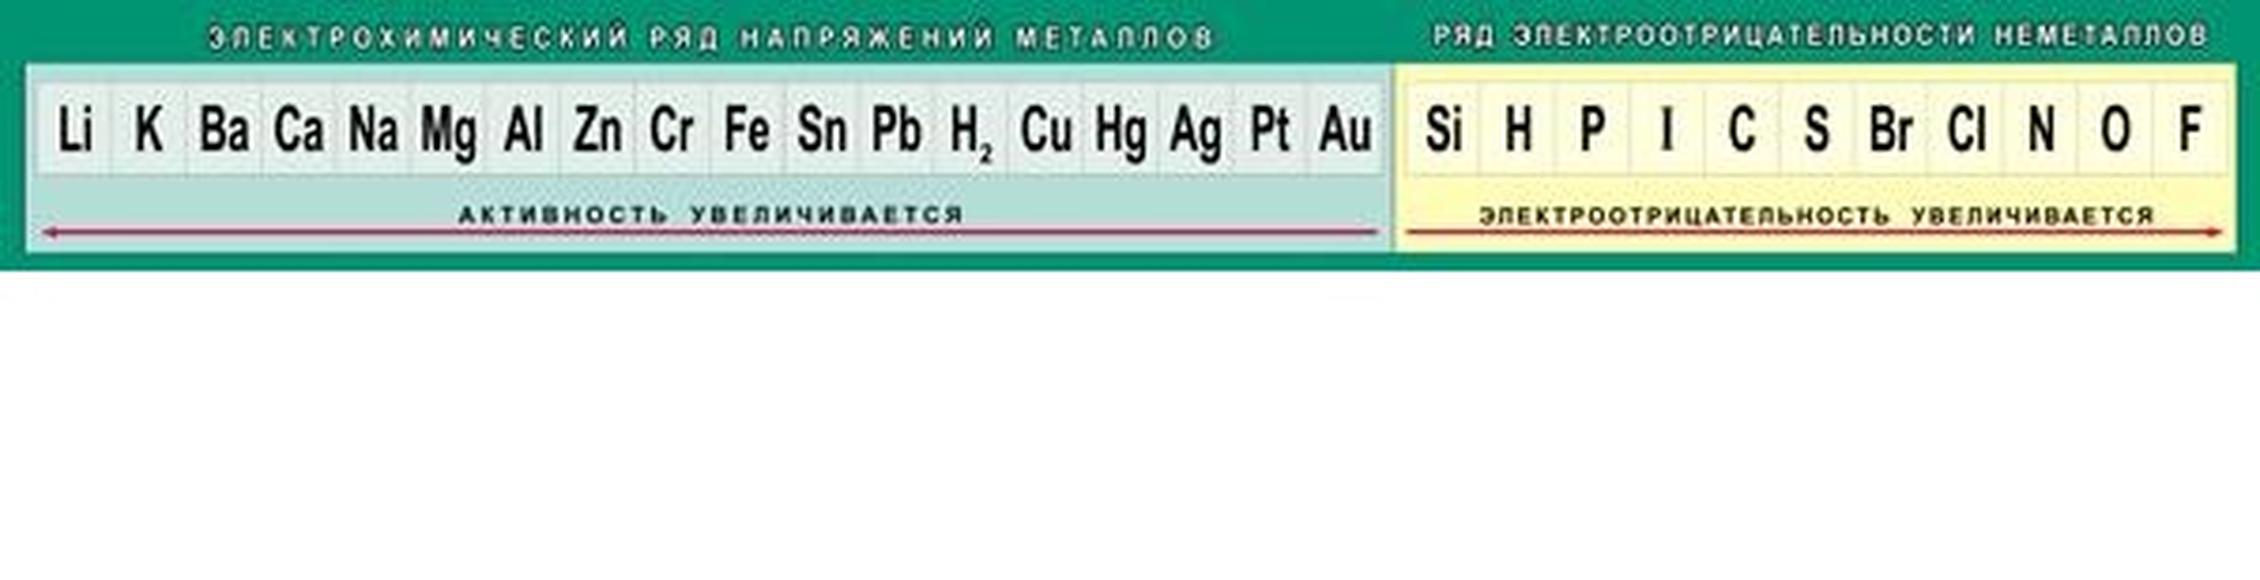 Относительная электроотрицательность химических элементов (Таблица)